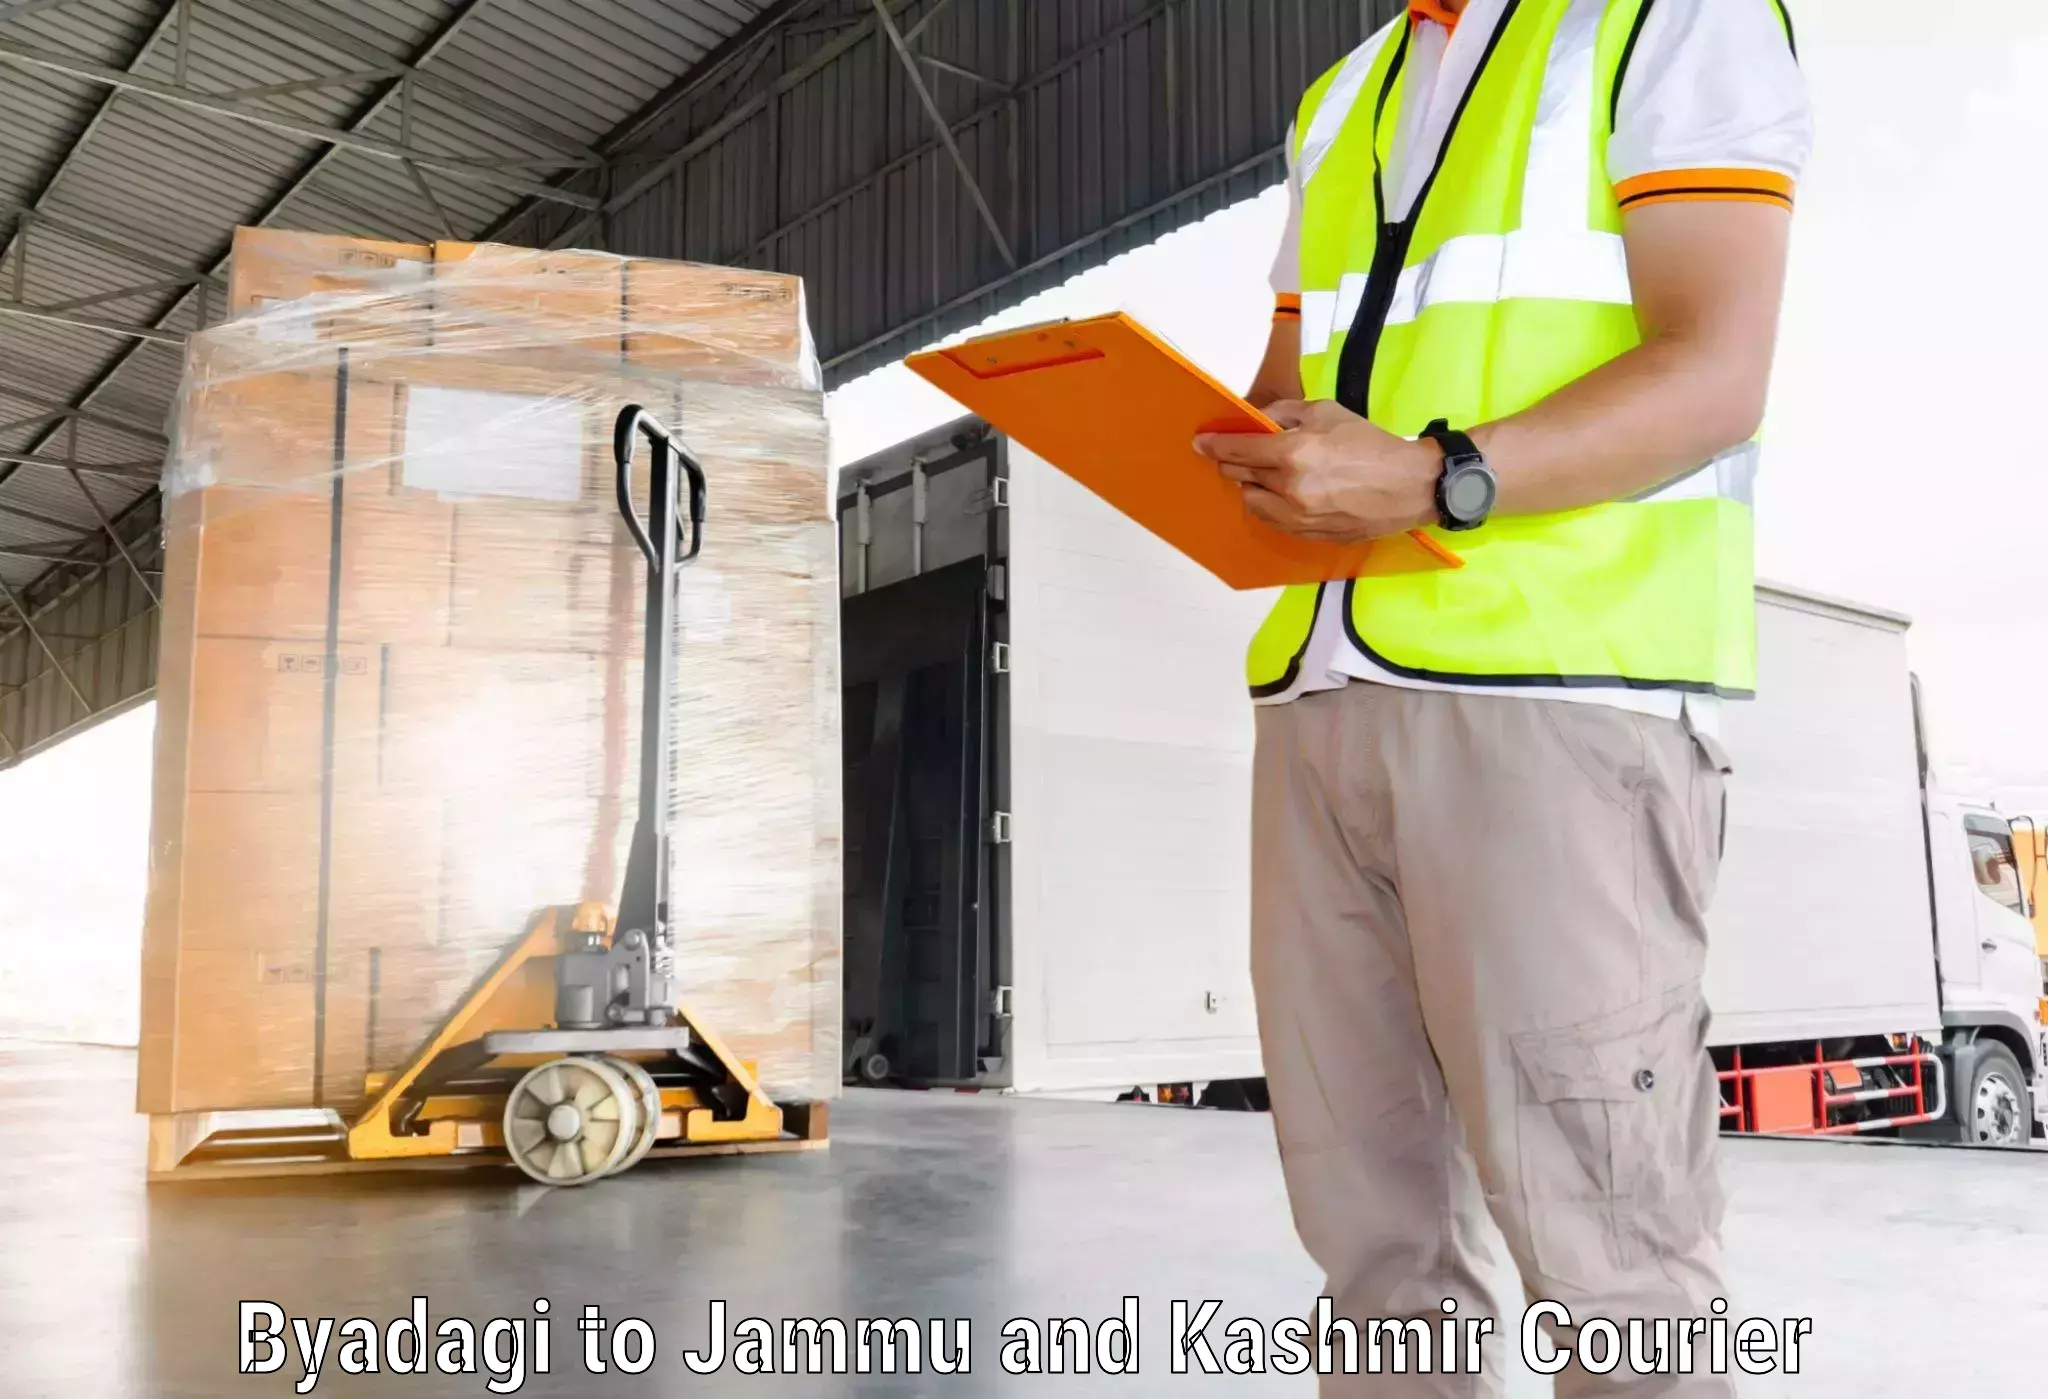 Easy access courier services Byadagi to Srinagar Kashmir